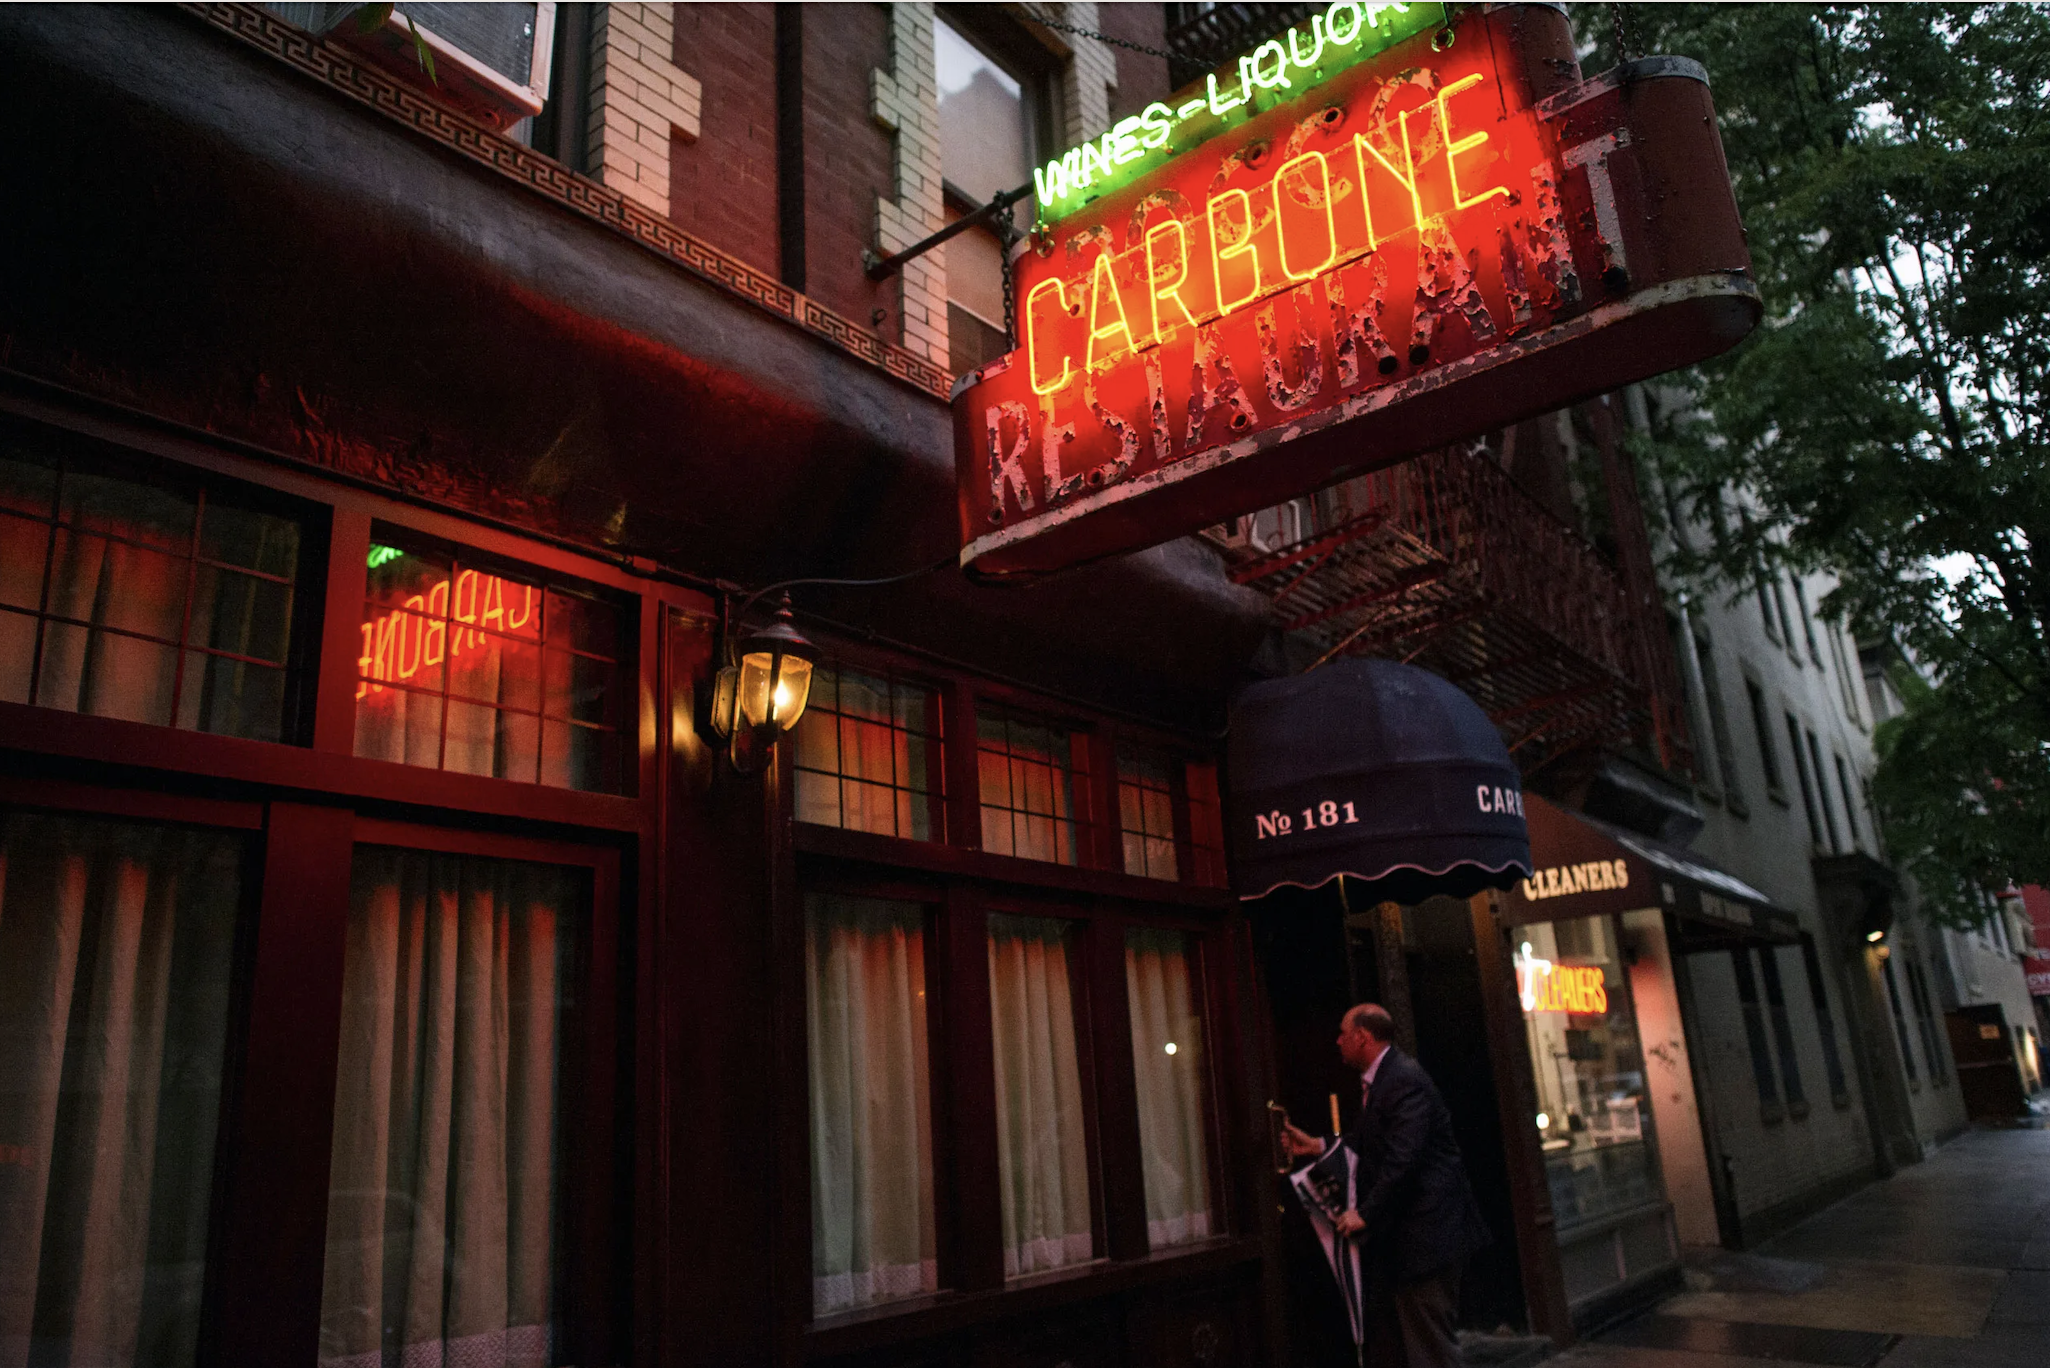 Carbone New York West Village restaurant